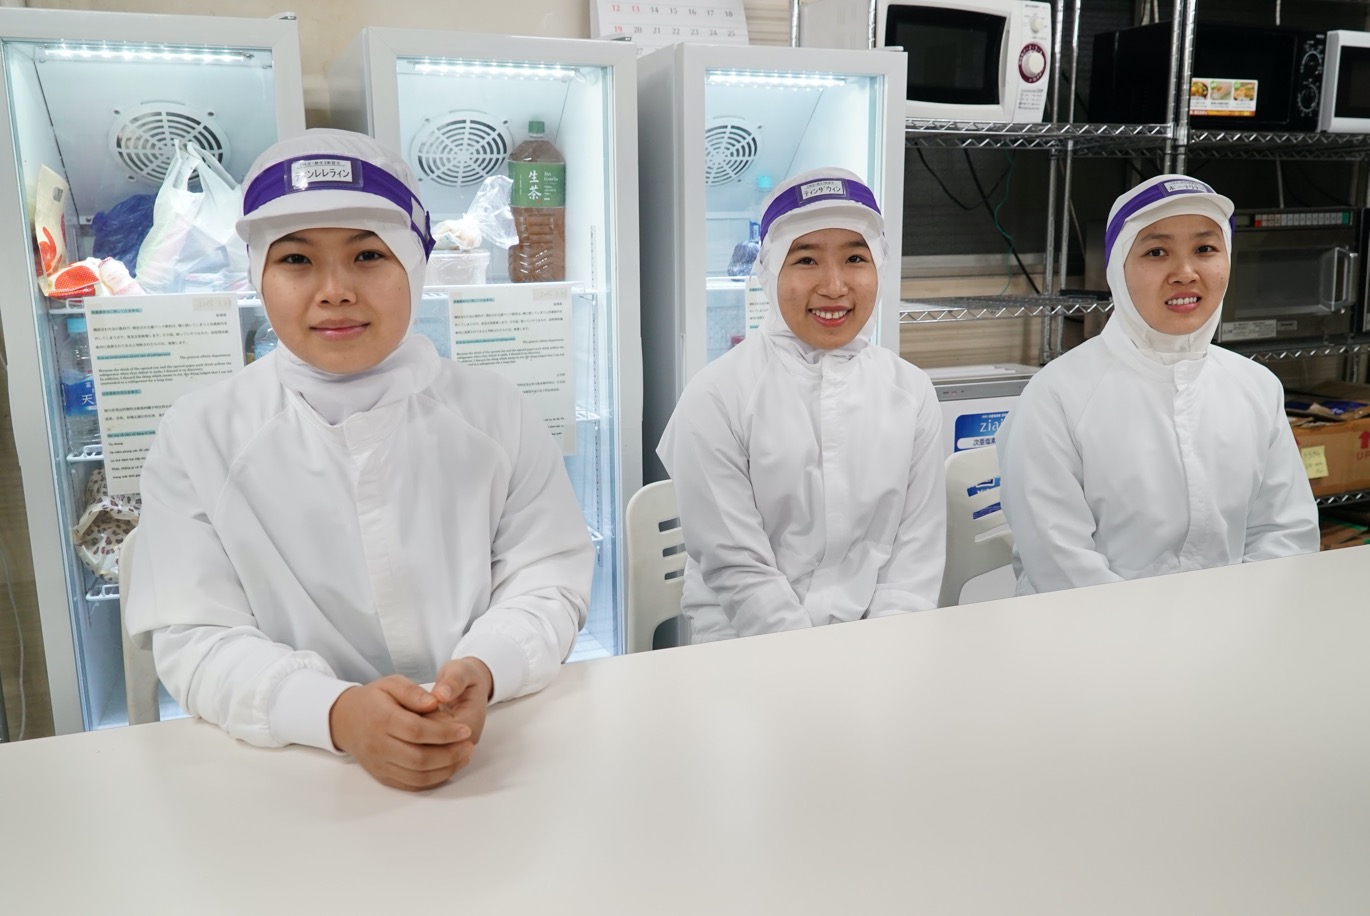 【食品会社で製造】日本で働くミャンマー人インタビュー